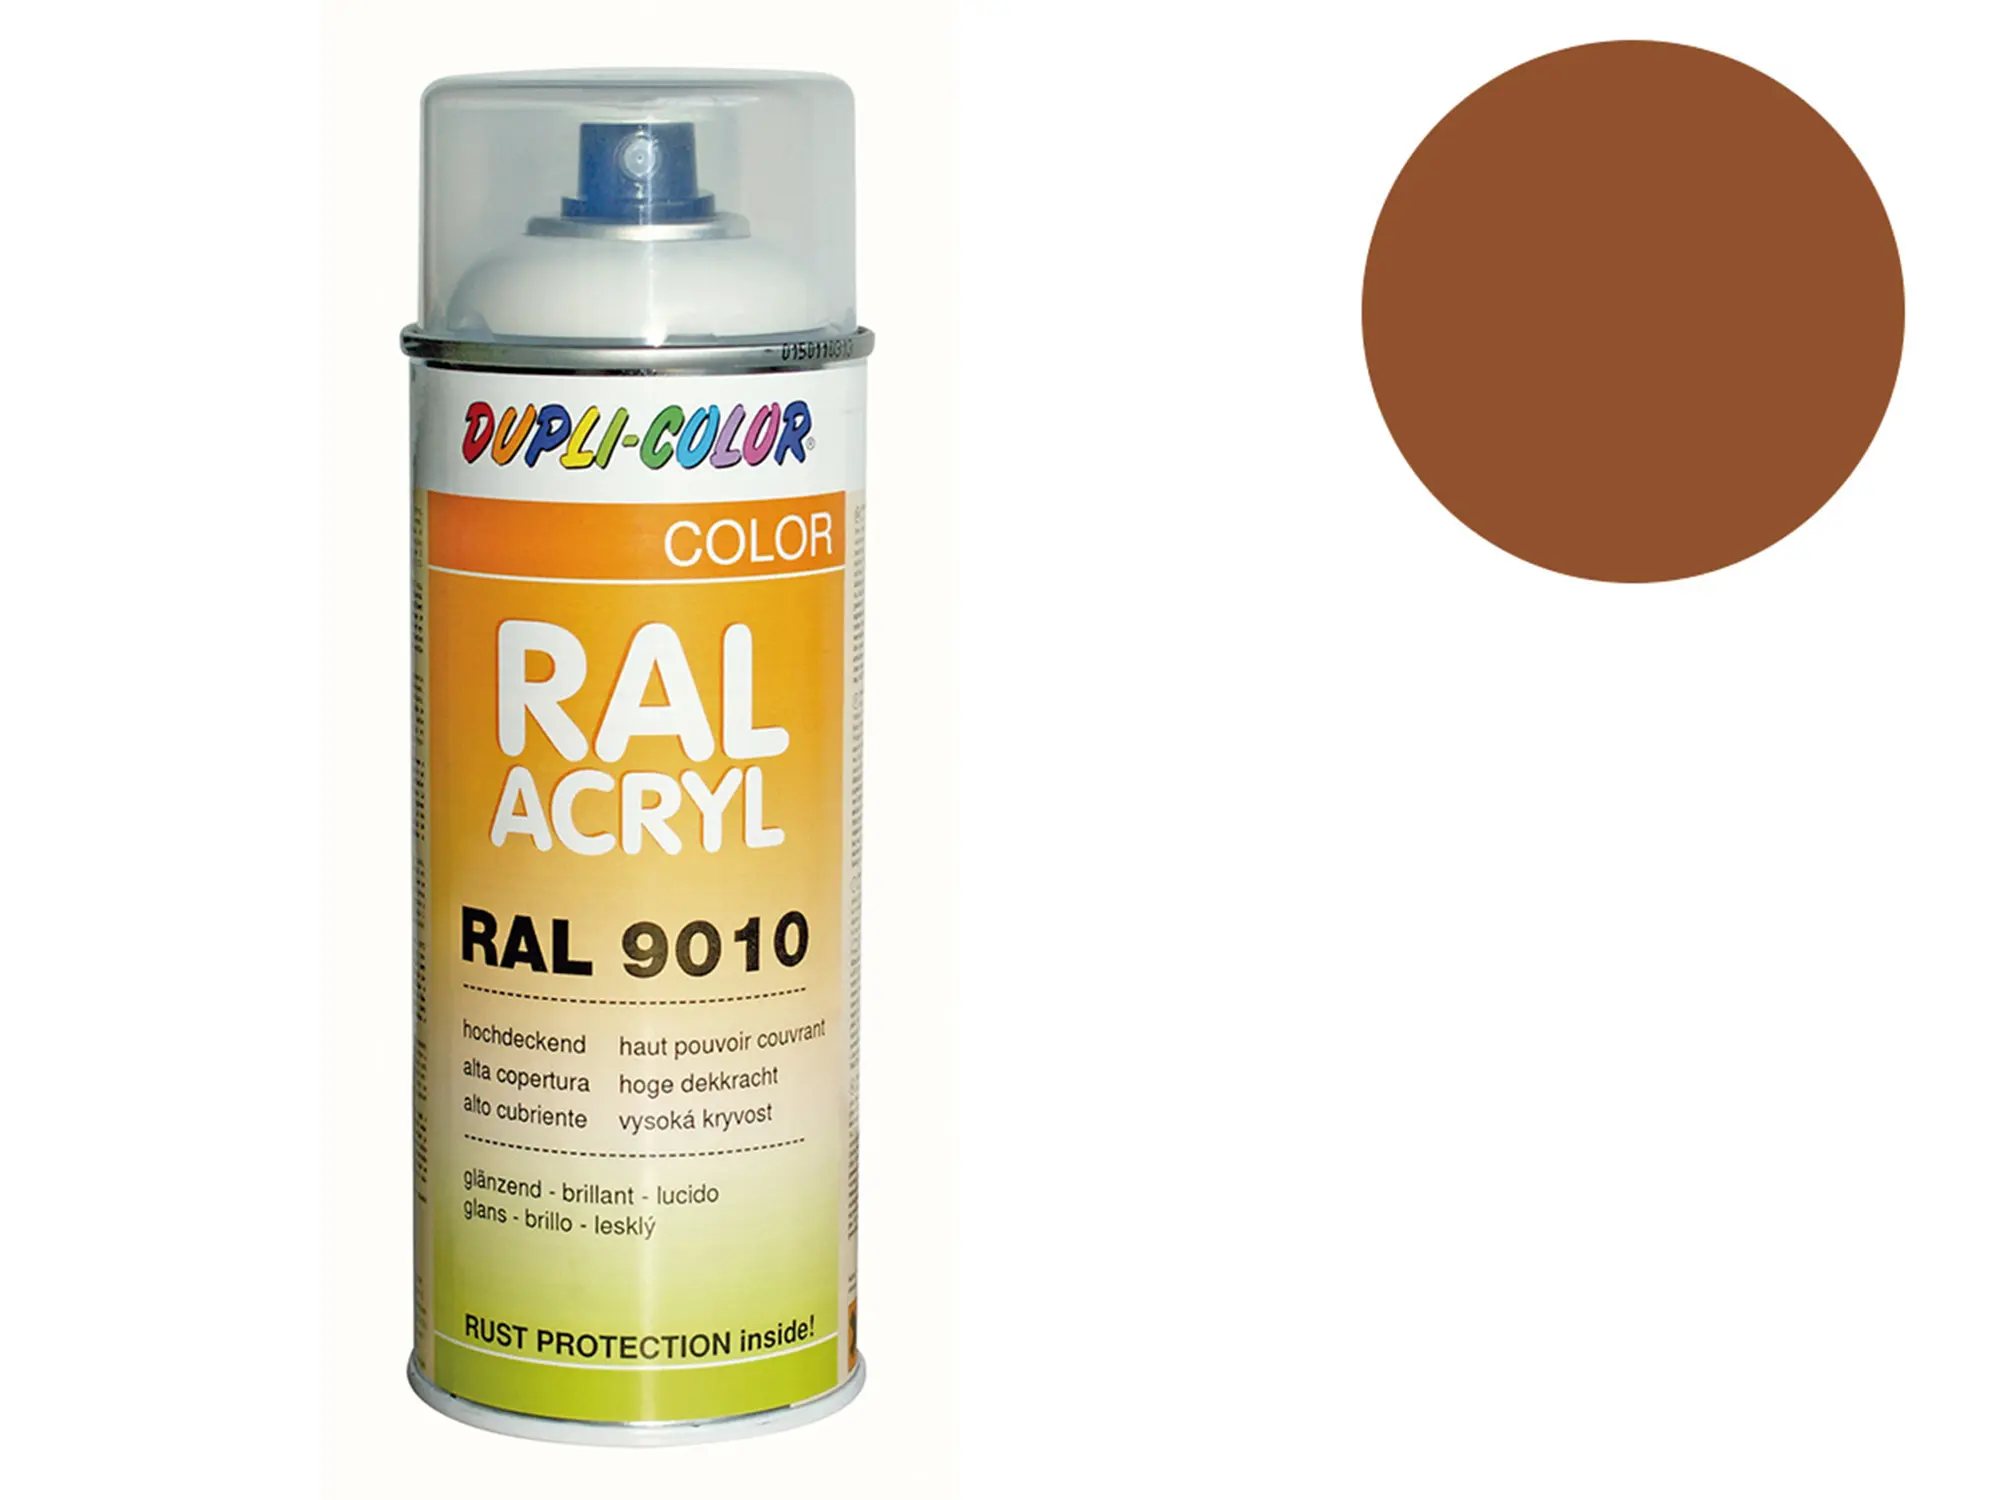 Dupli-Color Acryl-Spray RAL 8001 ockerbraun, glänzend - 400 ml, Art.-Nr.: 10064863 - Bild 1